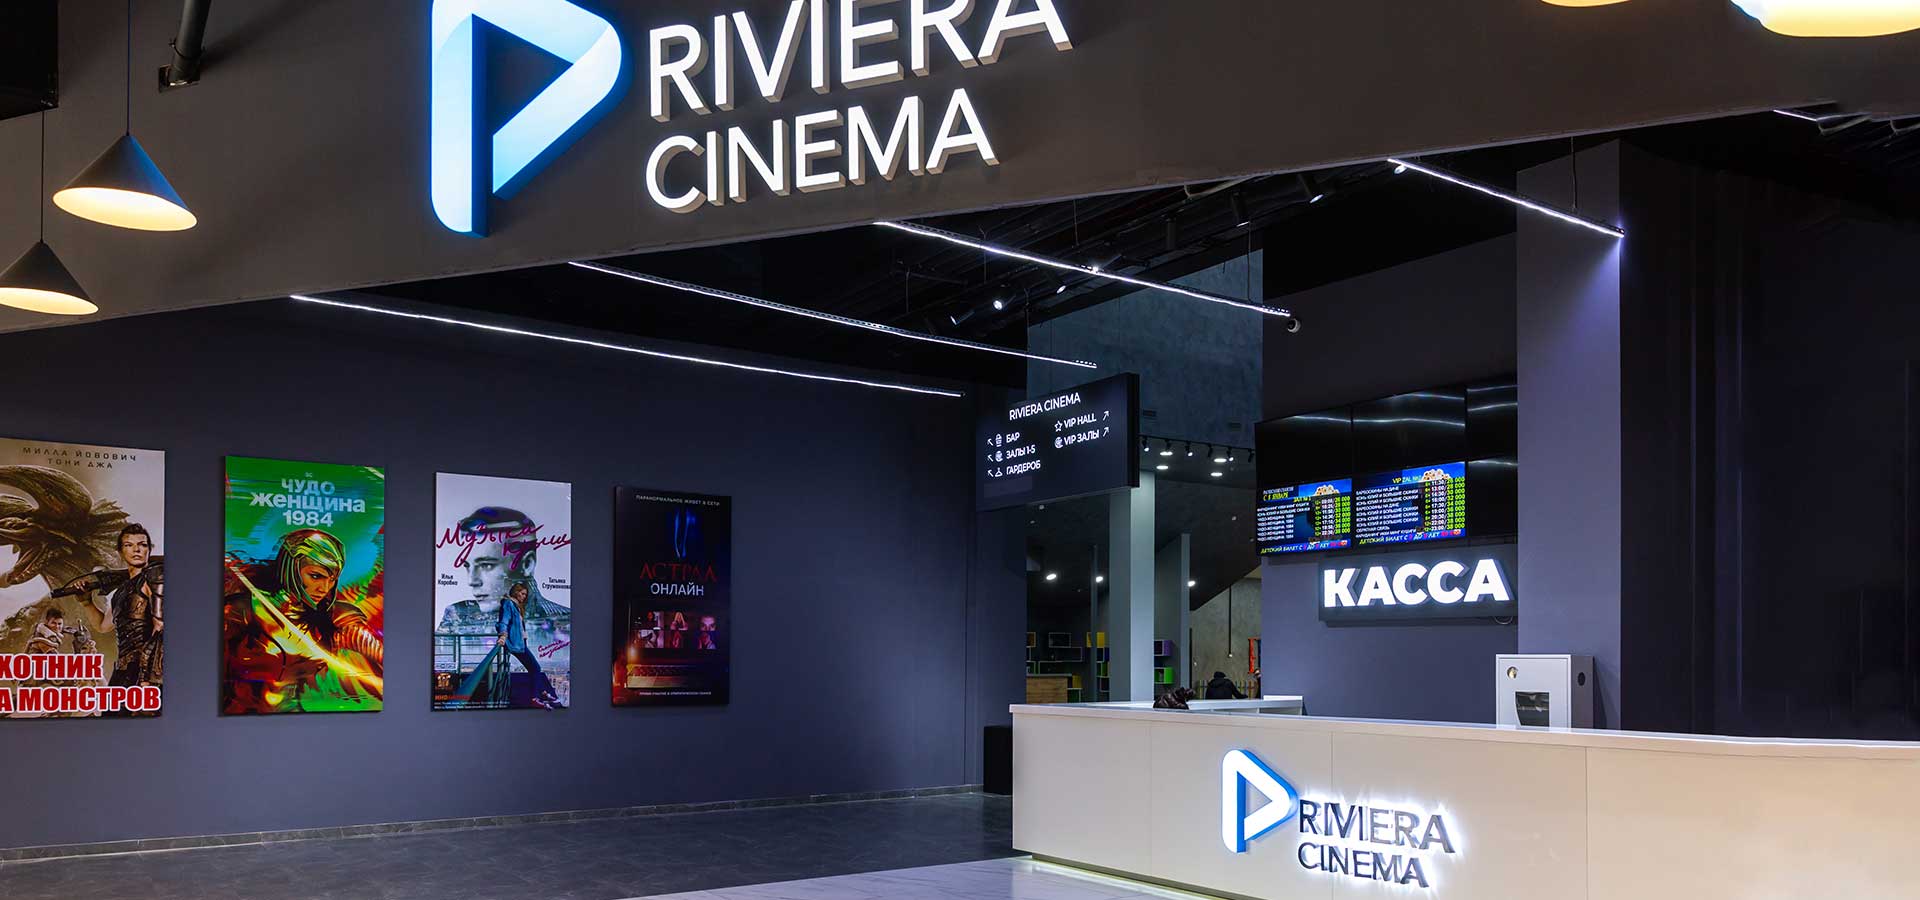 Кинотеатр «Riviera Cinema, зал №1» в Ташкенте - расписание фильмов, афиша кино, адрес, телефоны и другие контакты